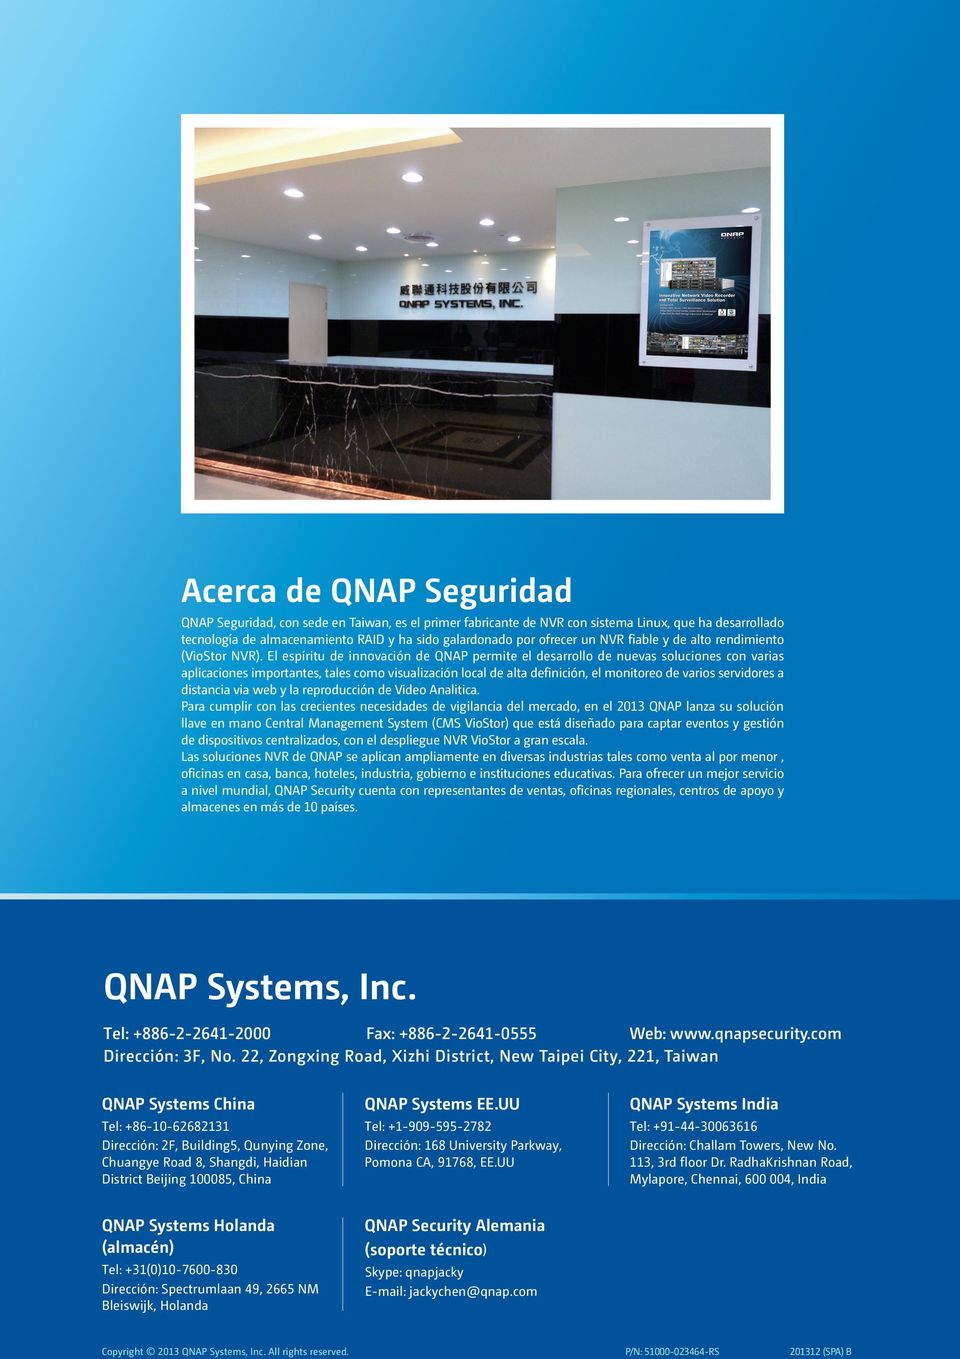 El espíritu de innovación de QNAP permite el desarrollo de nuevas soluciones con varias aplicaciones importantes, tales como visualización local de alta definición, el monitoreo de varios servidores